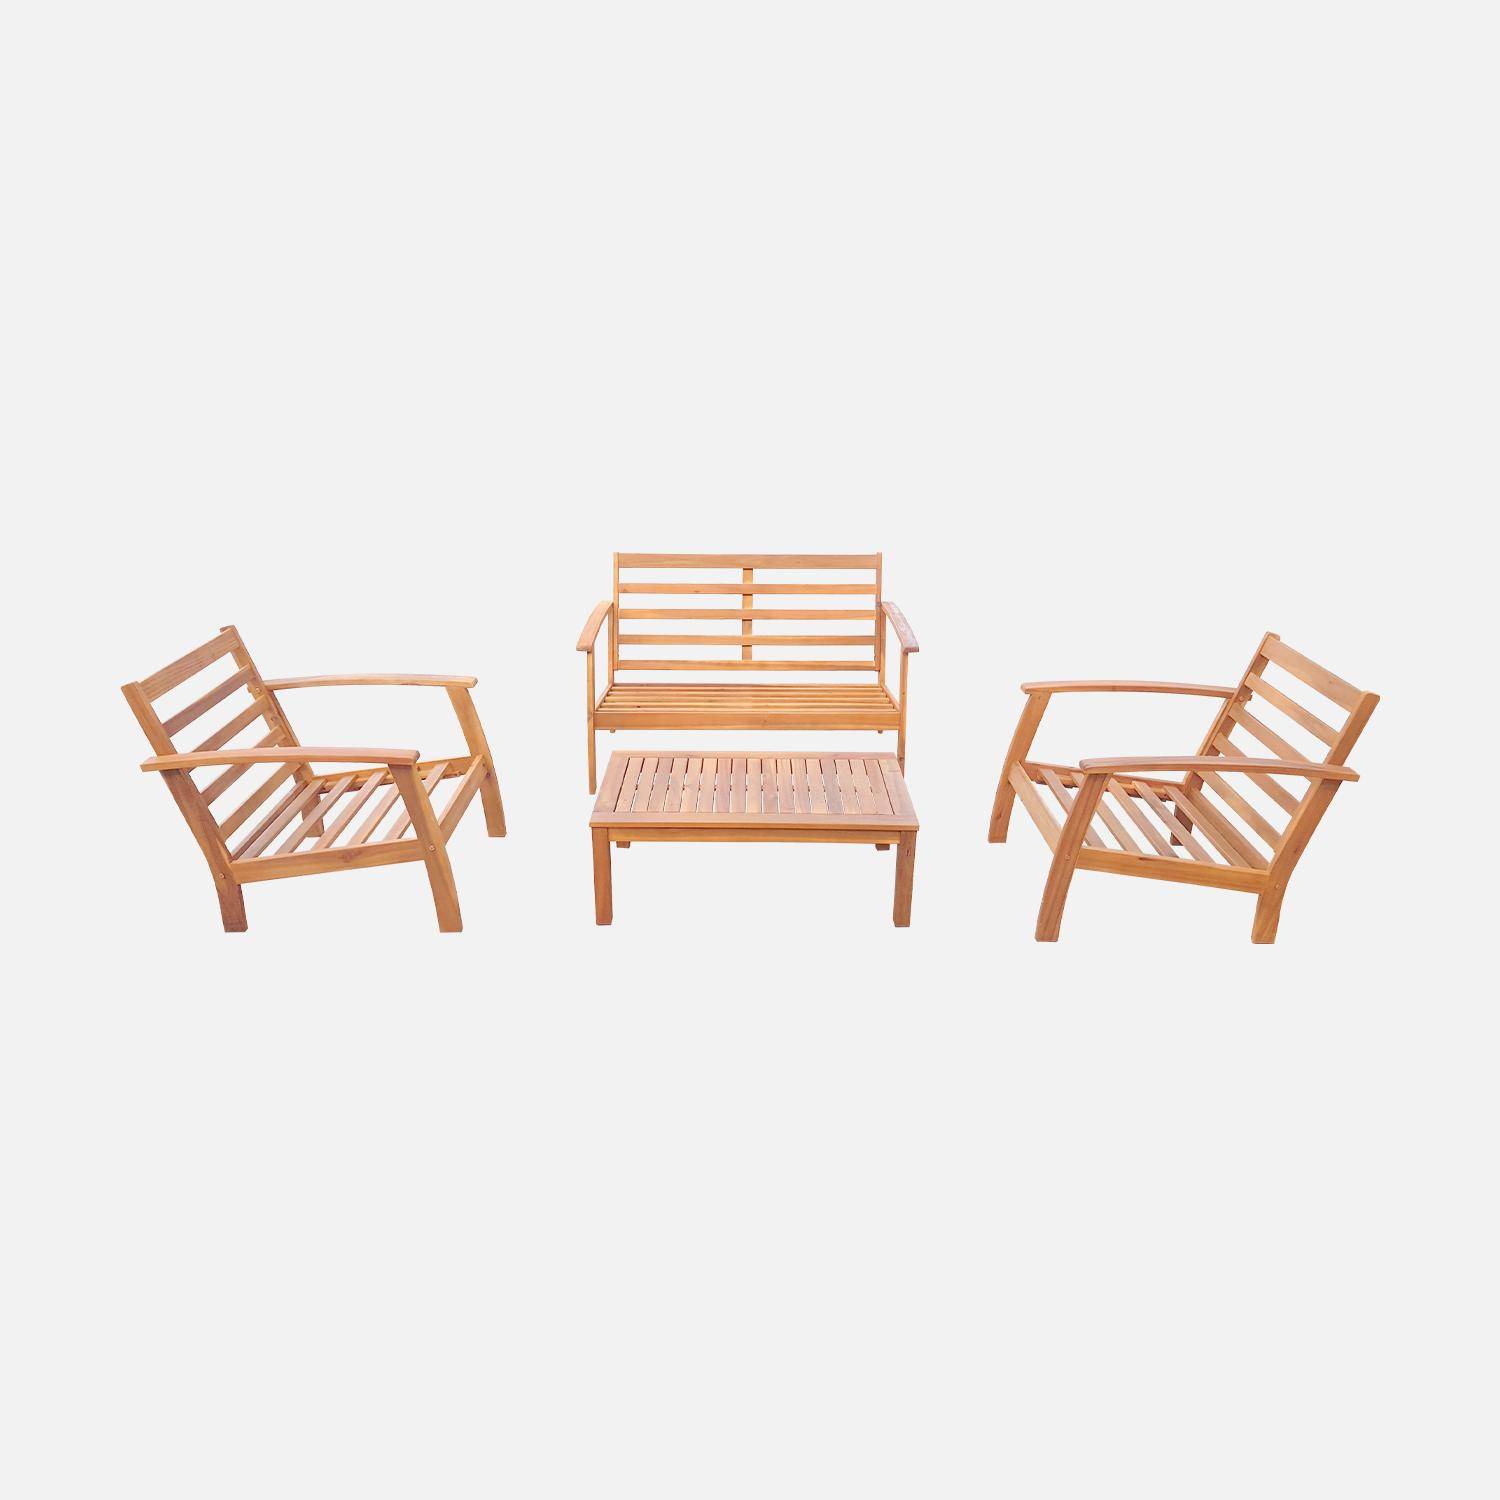 Salon de jardin en bois 4 places - Ushuaïa - Coussins Savane, canapé, fauteuils et table basse en acacia, design,sweeek,Photo5